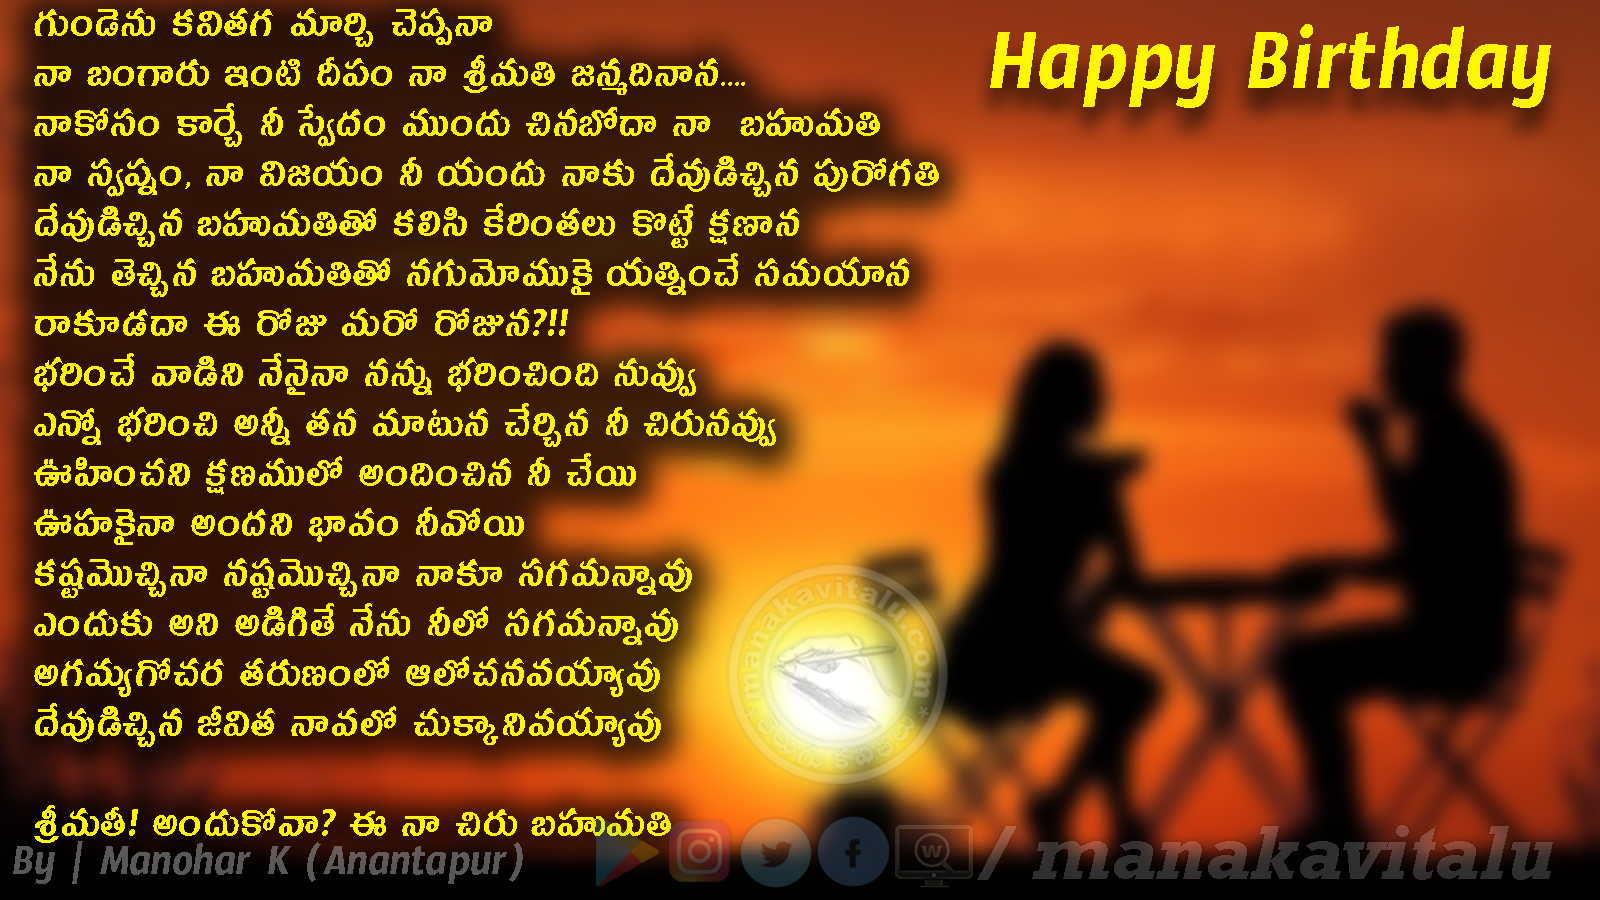 శ్రీమతికి జన్మదిన బహుమతి కవితలు | Telugu Birthday Quotes for Wife